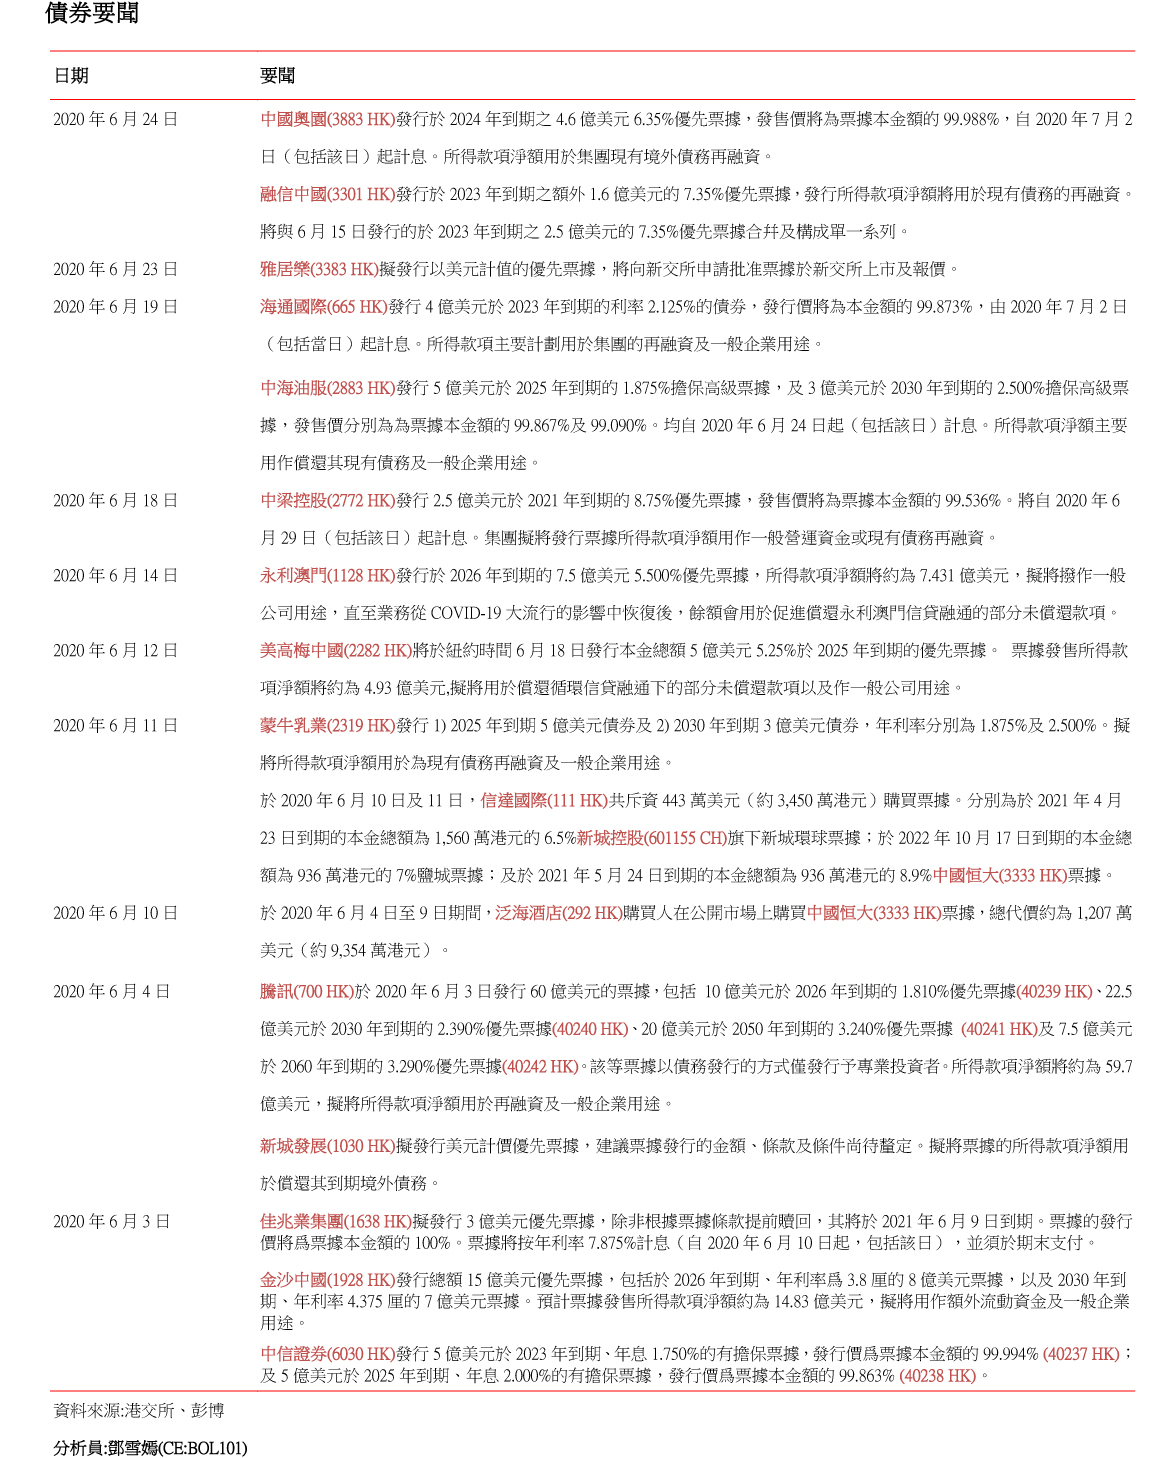 南華金融 SCtrade.com 企業要聞 (6月26日) |宏力招股 雅居樂/合景分拆業務